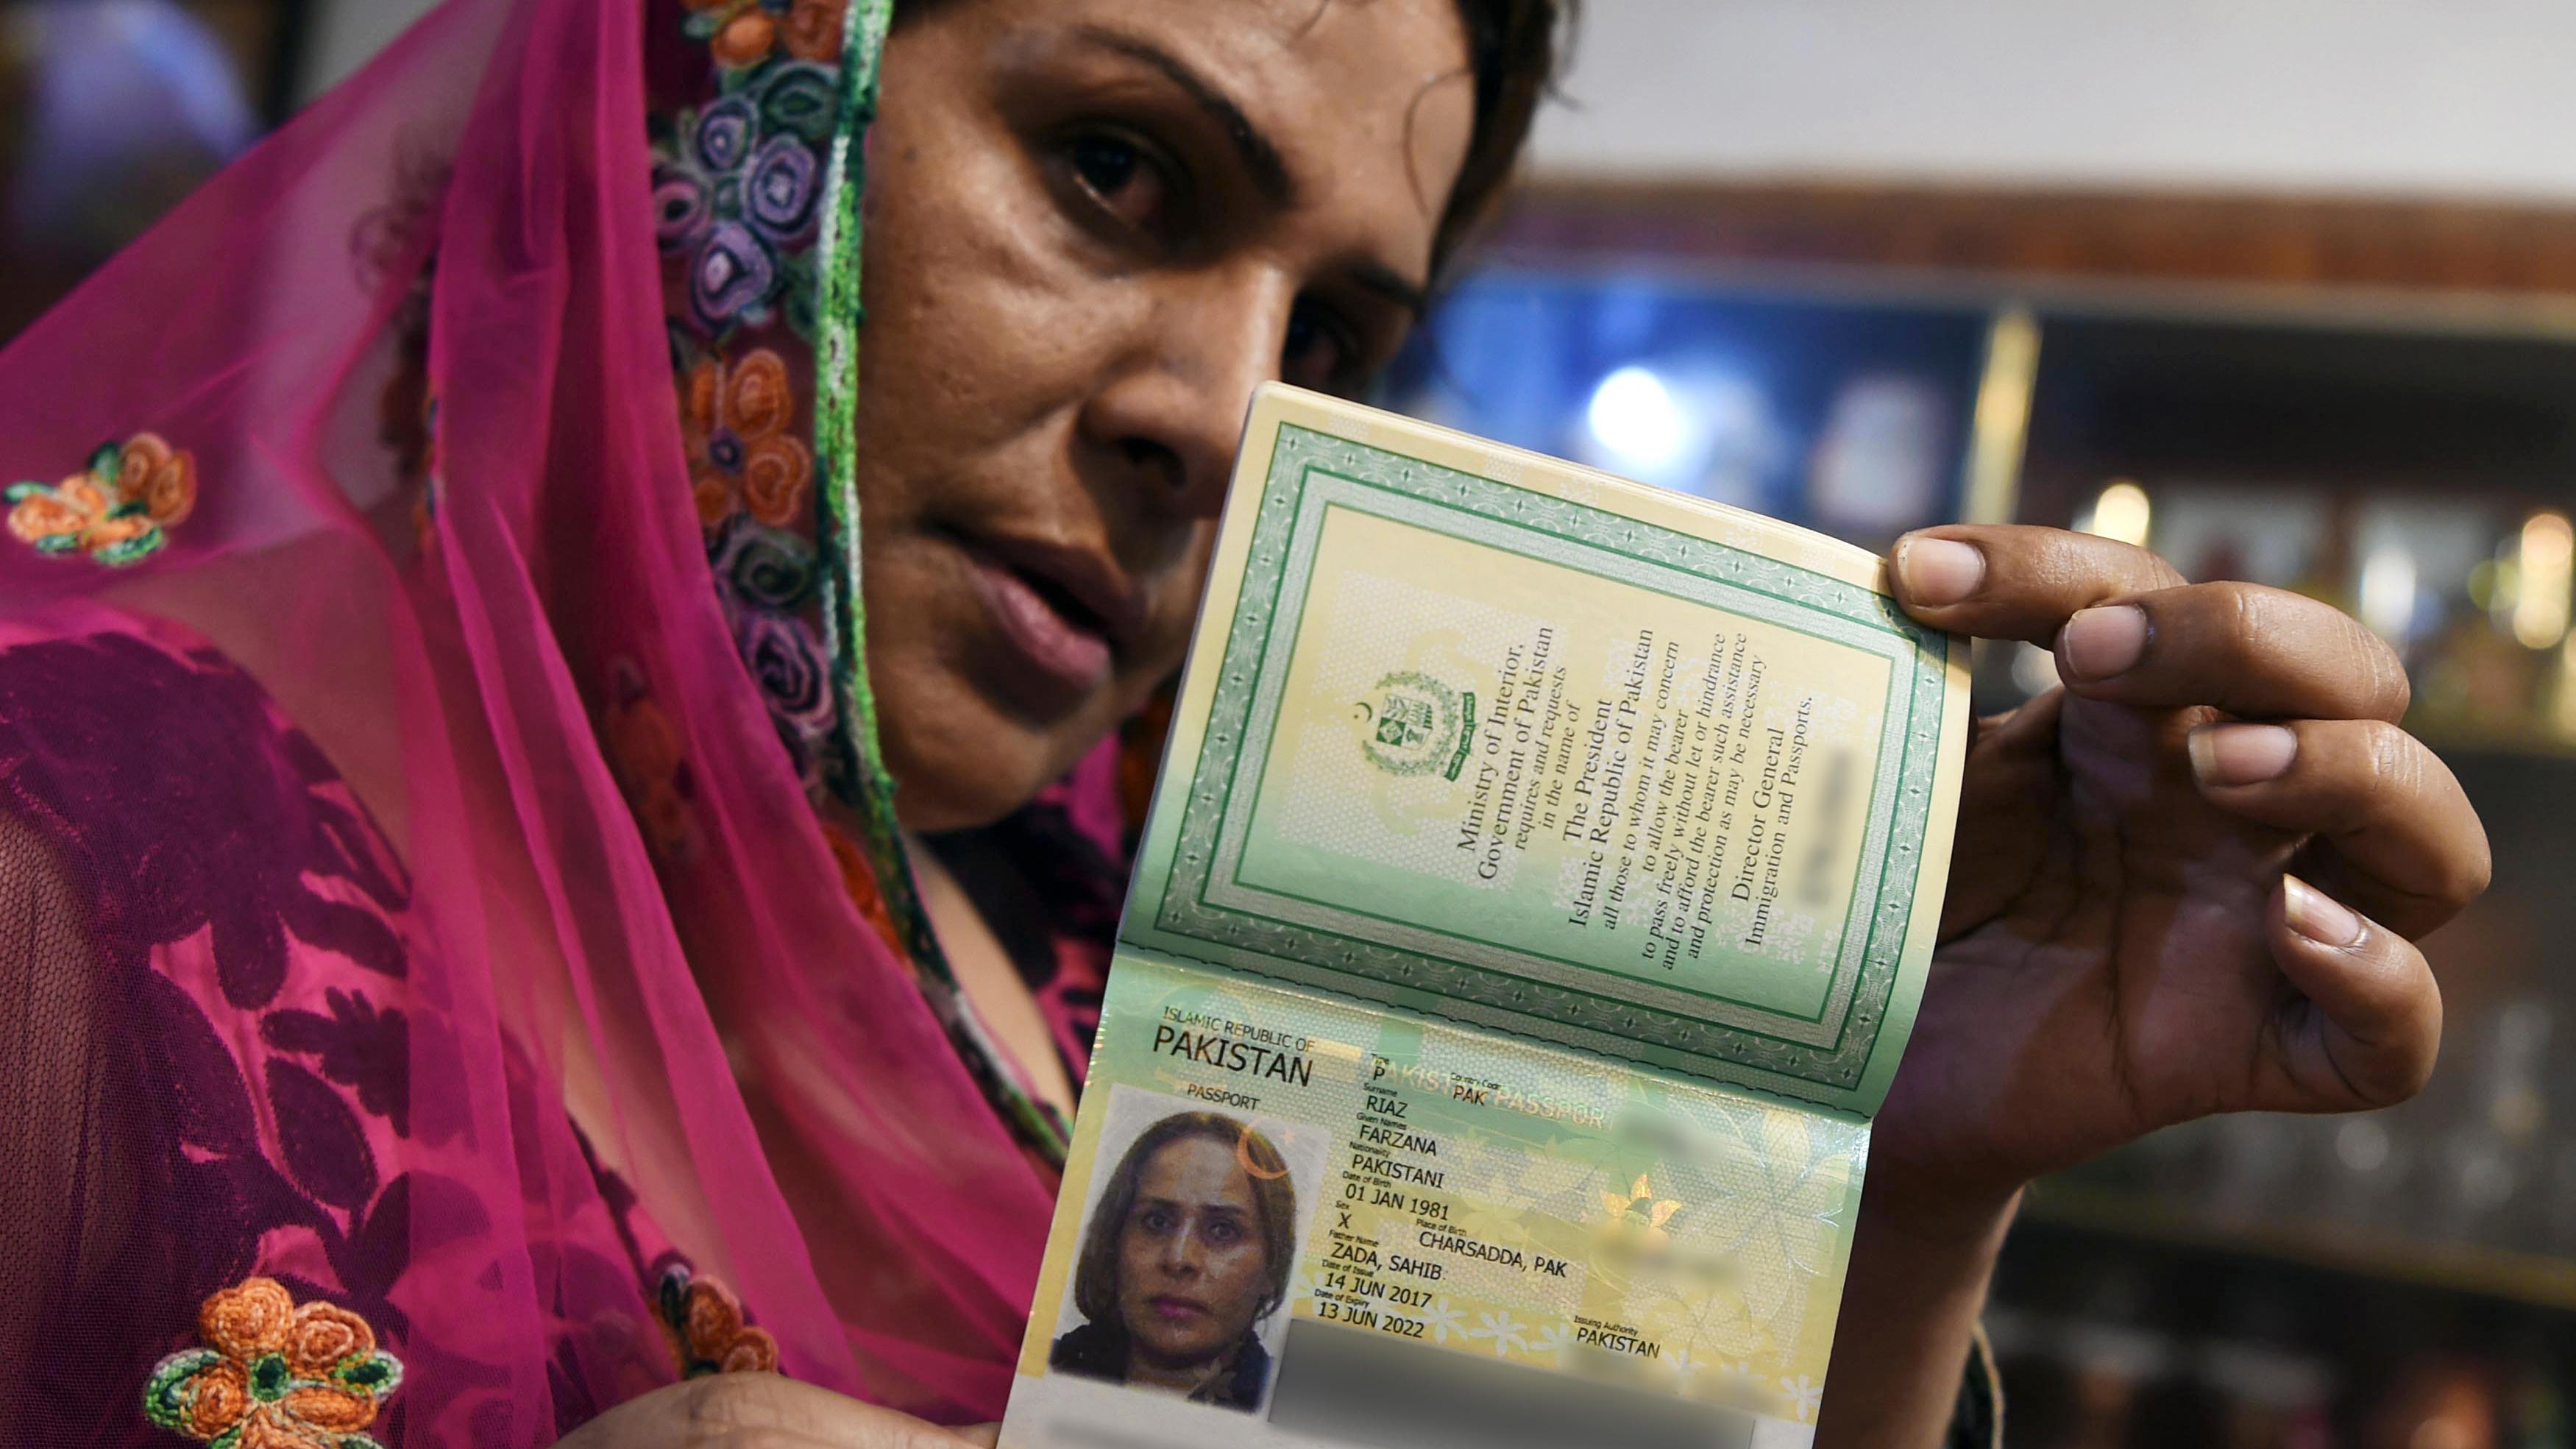 El gobierno de Pakistán emite el primer pasaporte de género neutro